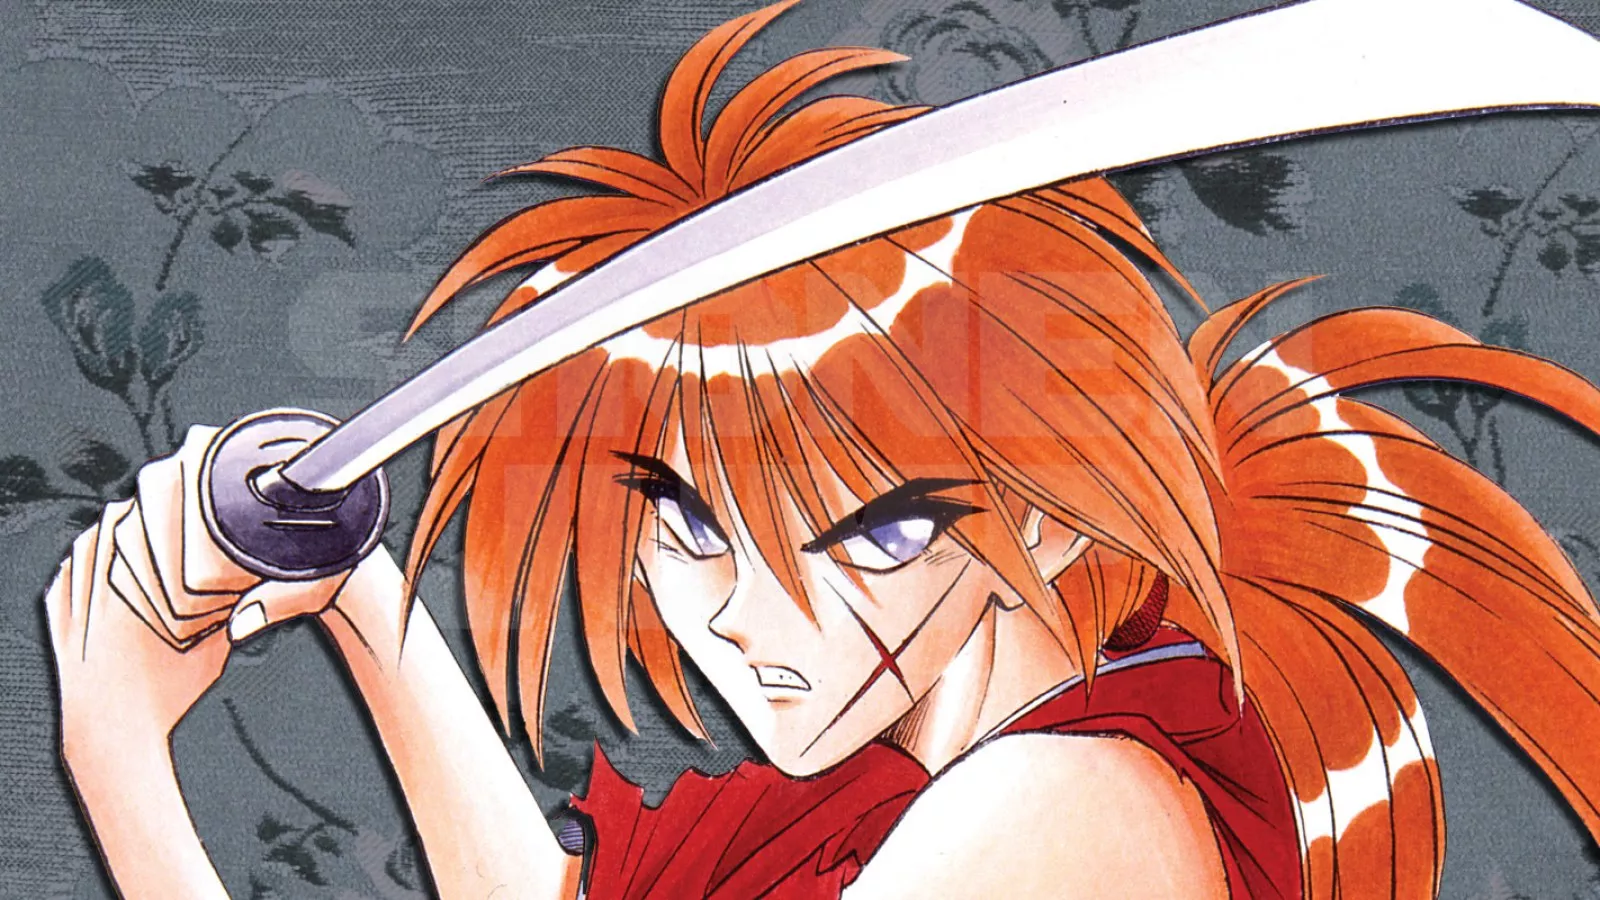 Rurouni Kenshin: Kyoto Inferno Reveals Latest Trailer